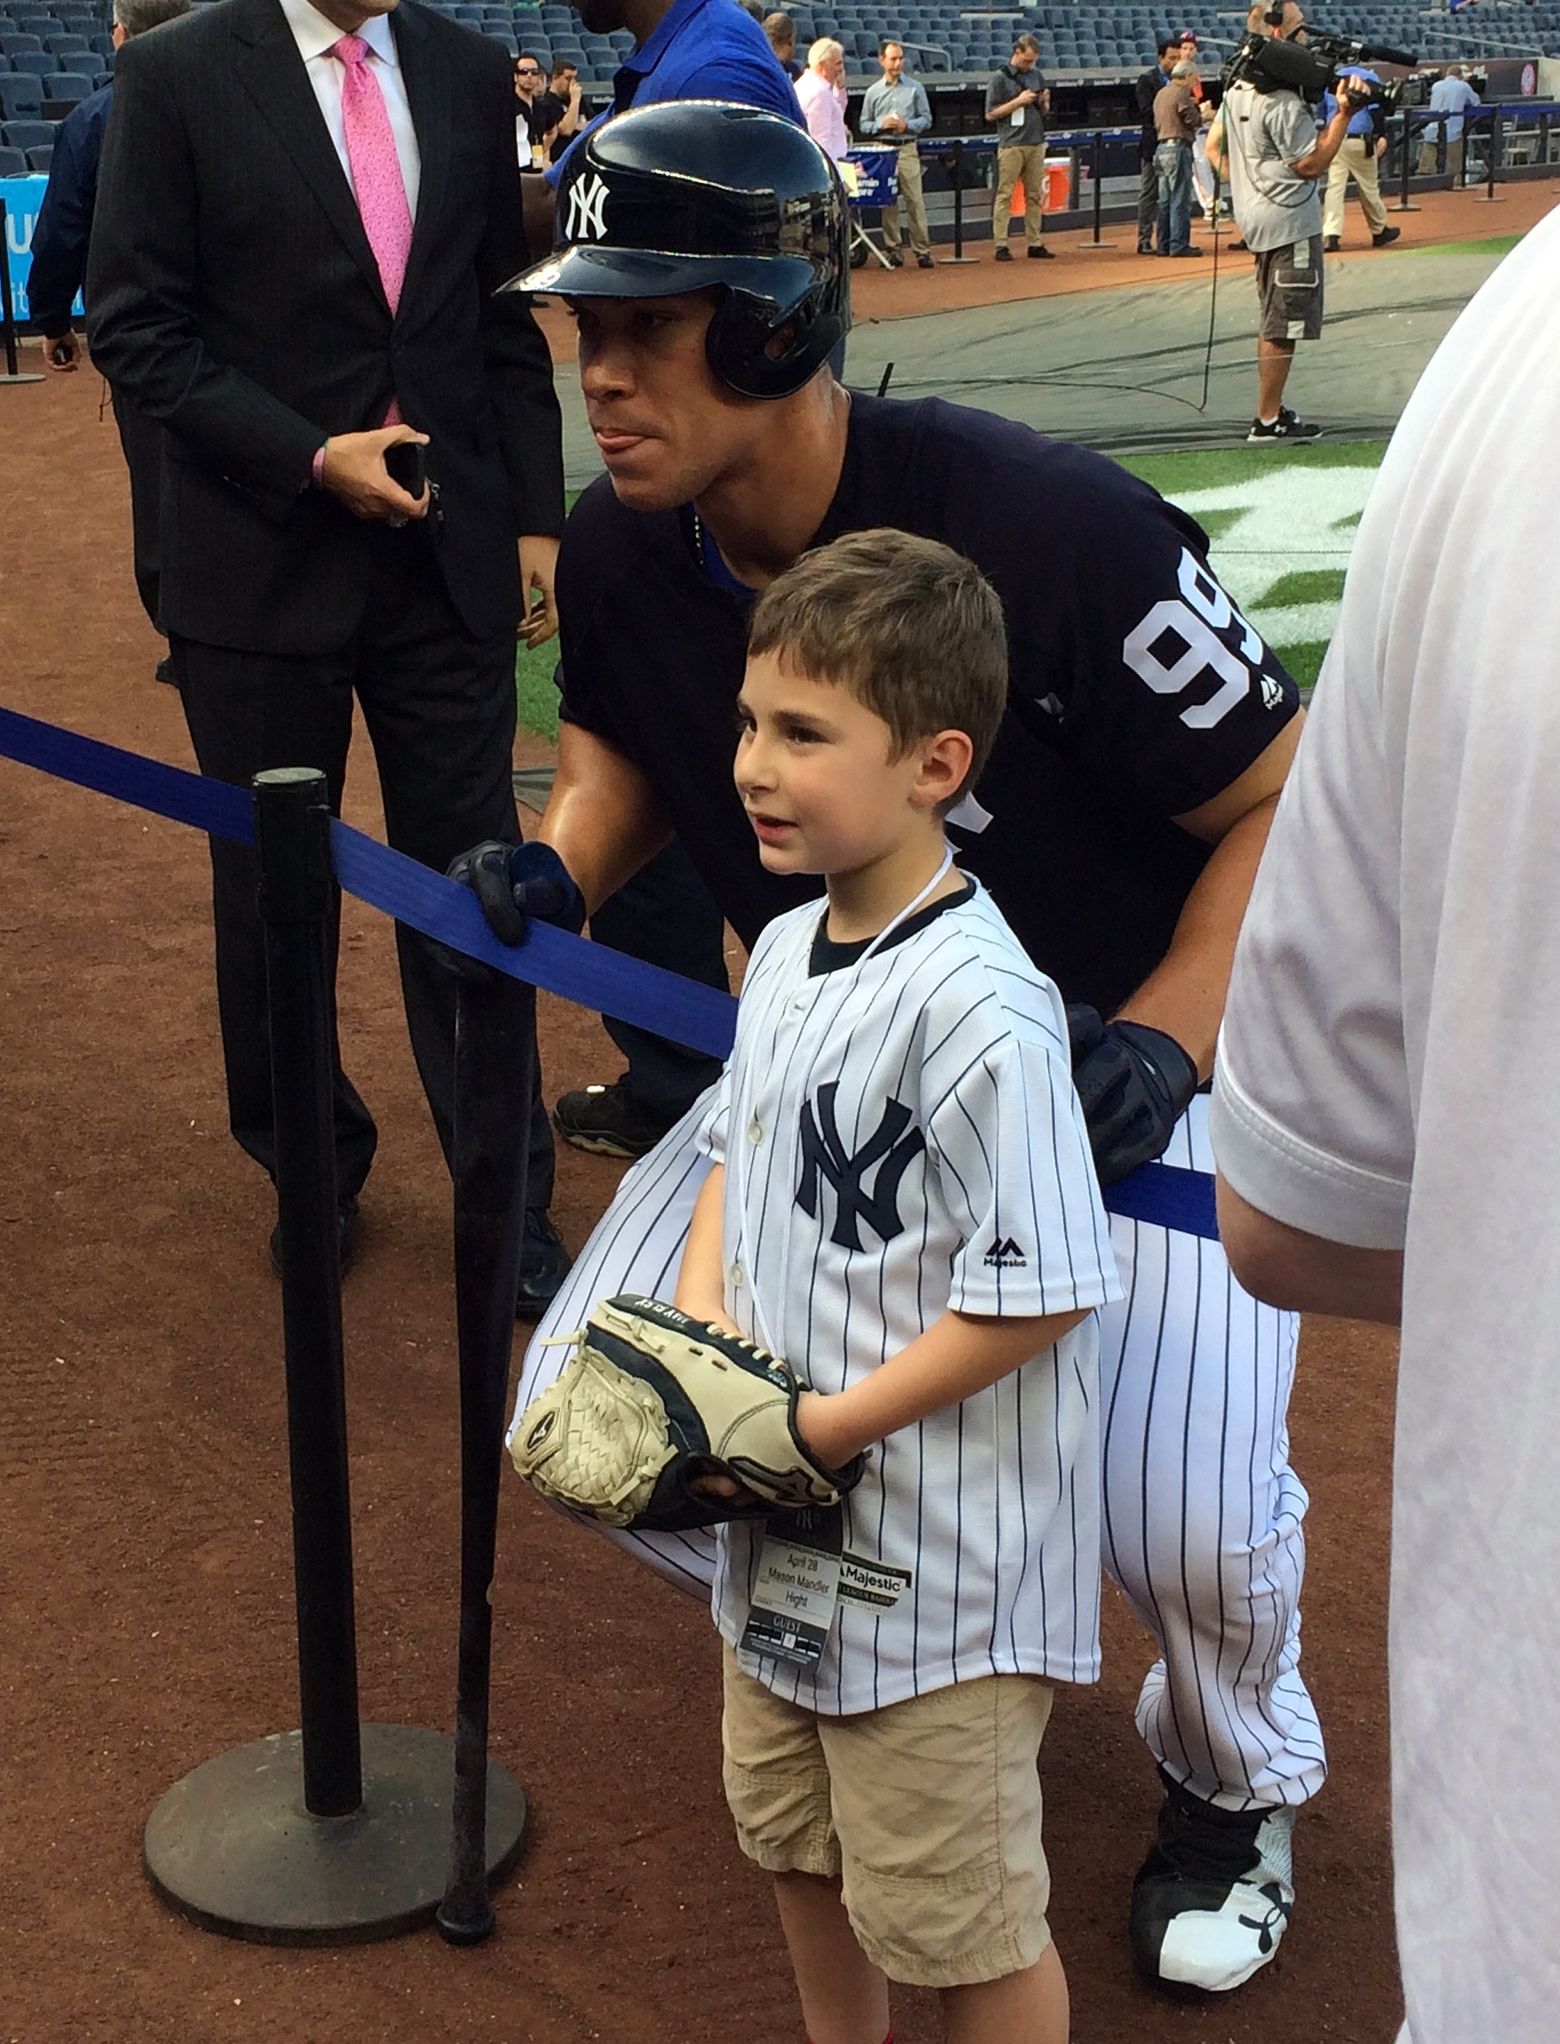 6-foot-7 Aaron Judge transforms batting practice in Bronx